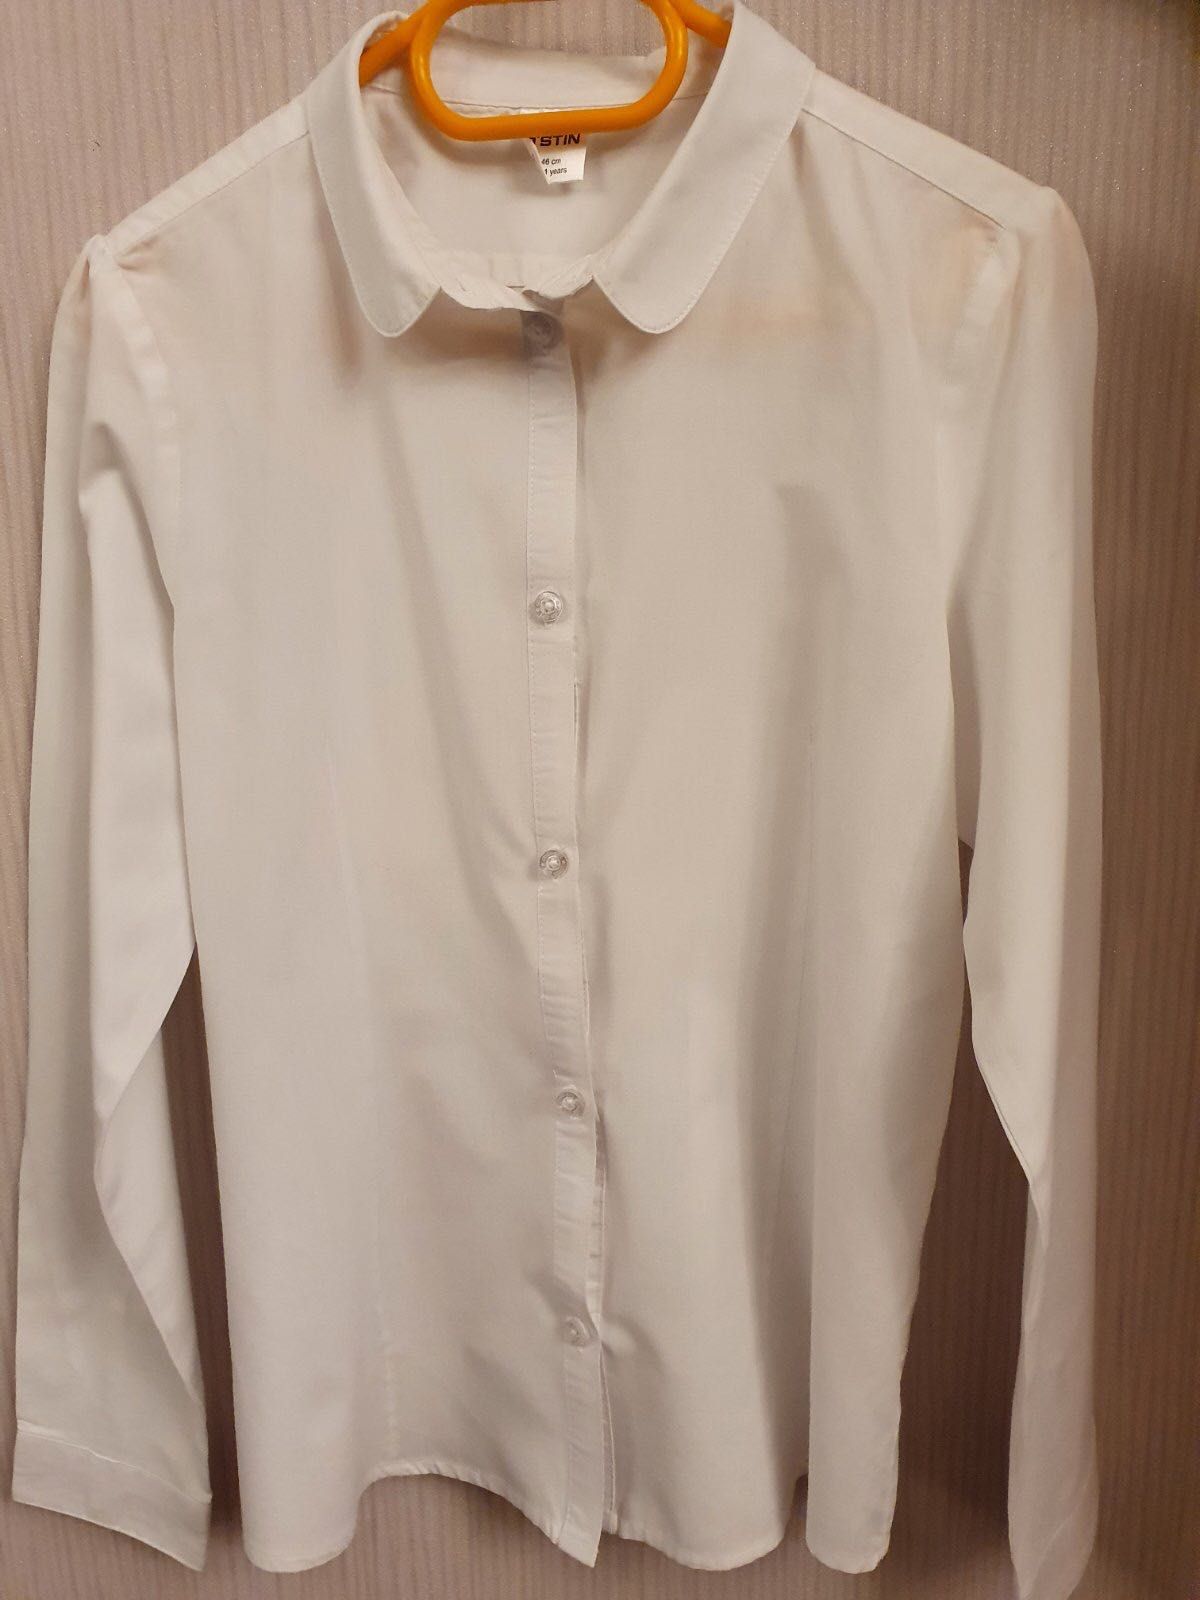 Рубашка для девочки O’STIN, рост 146 см, возраст 10-11 лет